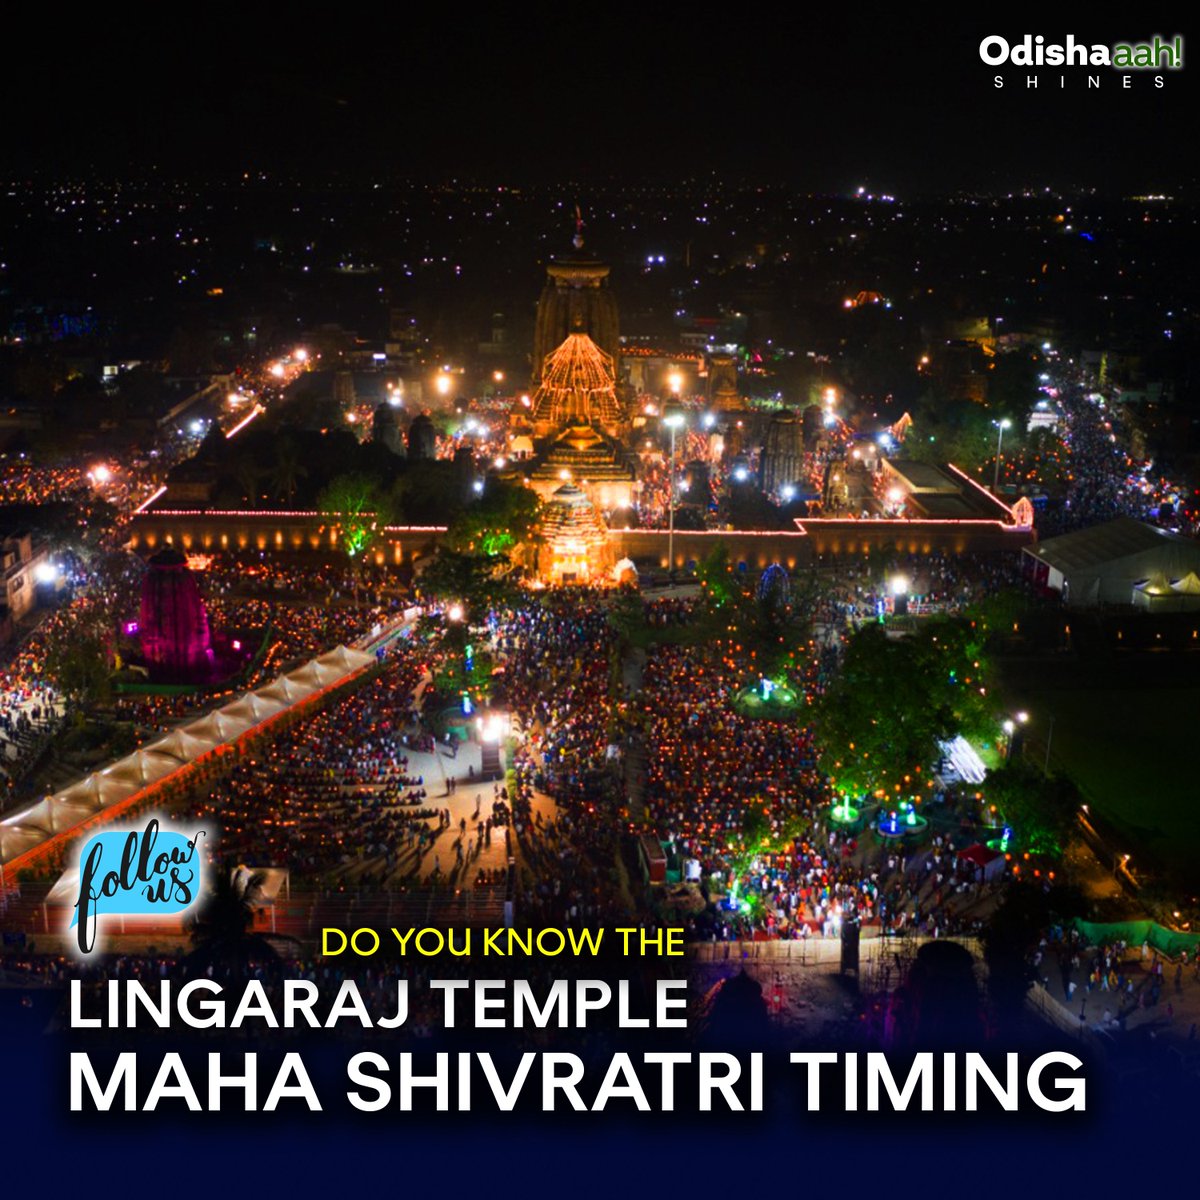 #MahaShivratri 2023: Know Mahadeepa time for Lingaraj temple. #lingarajtemple #shivratri #odisha #odishashines